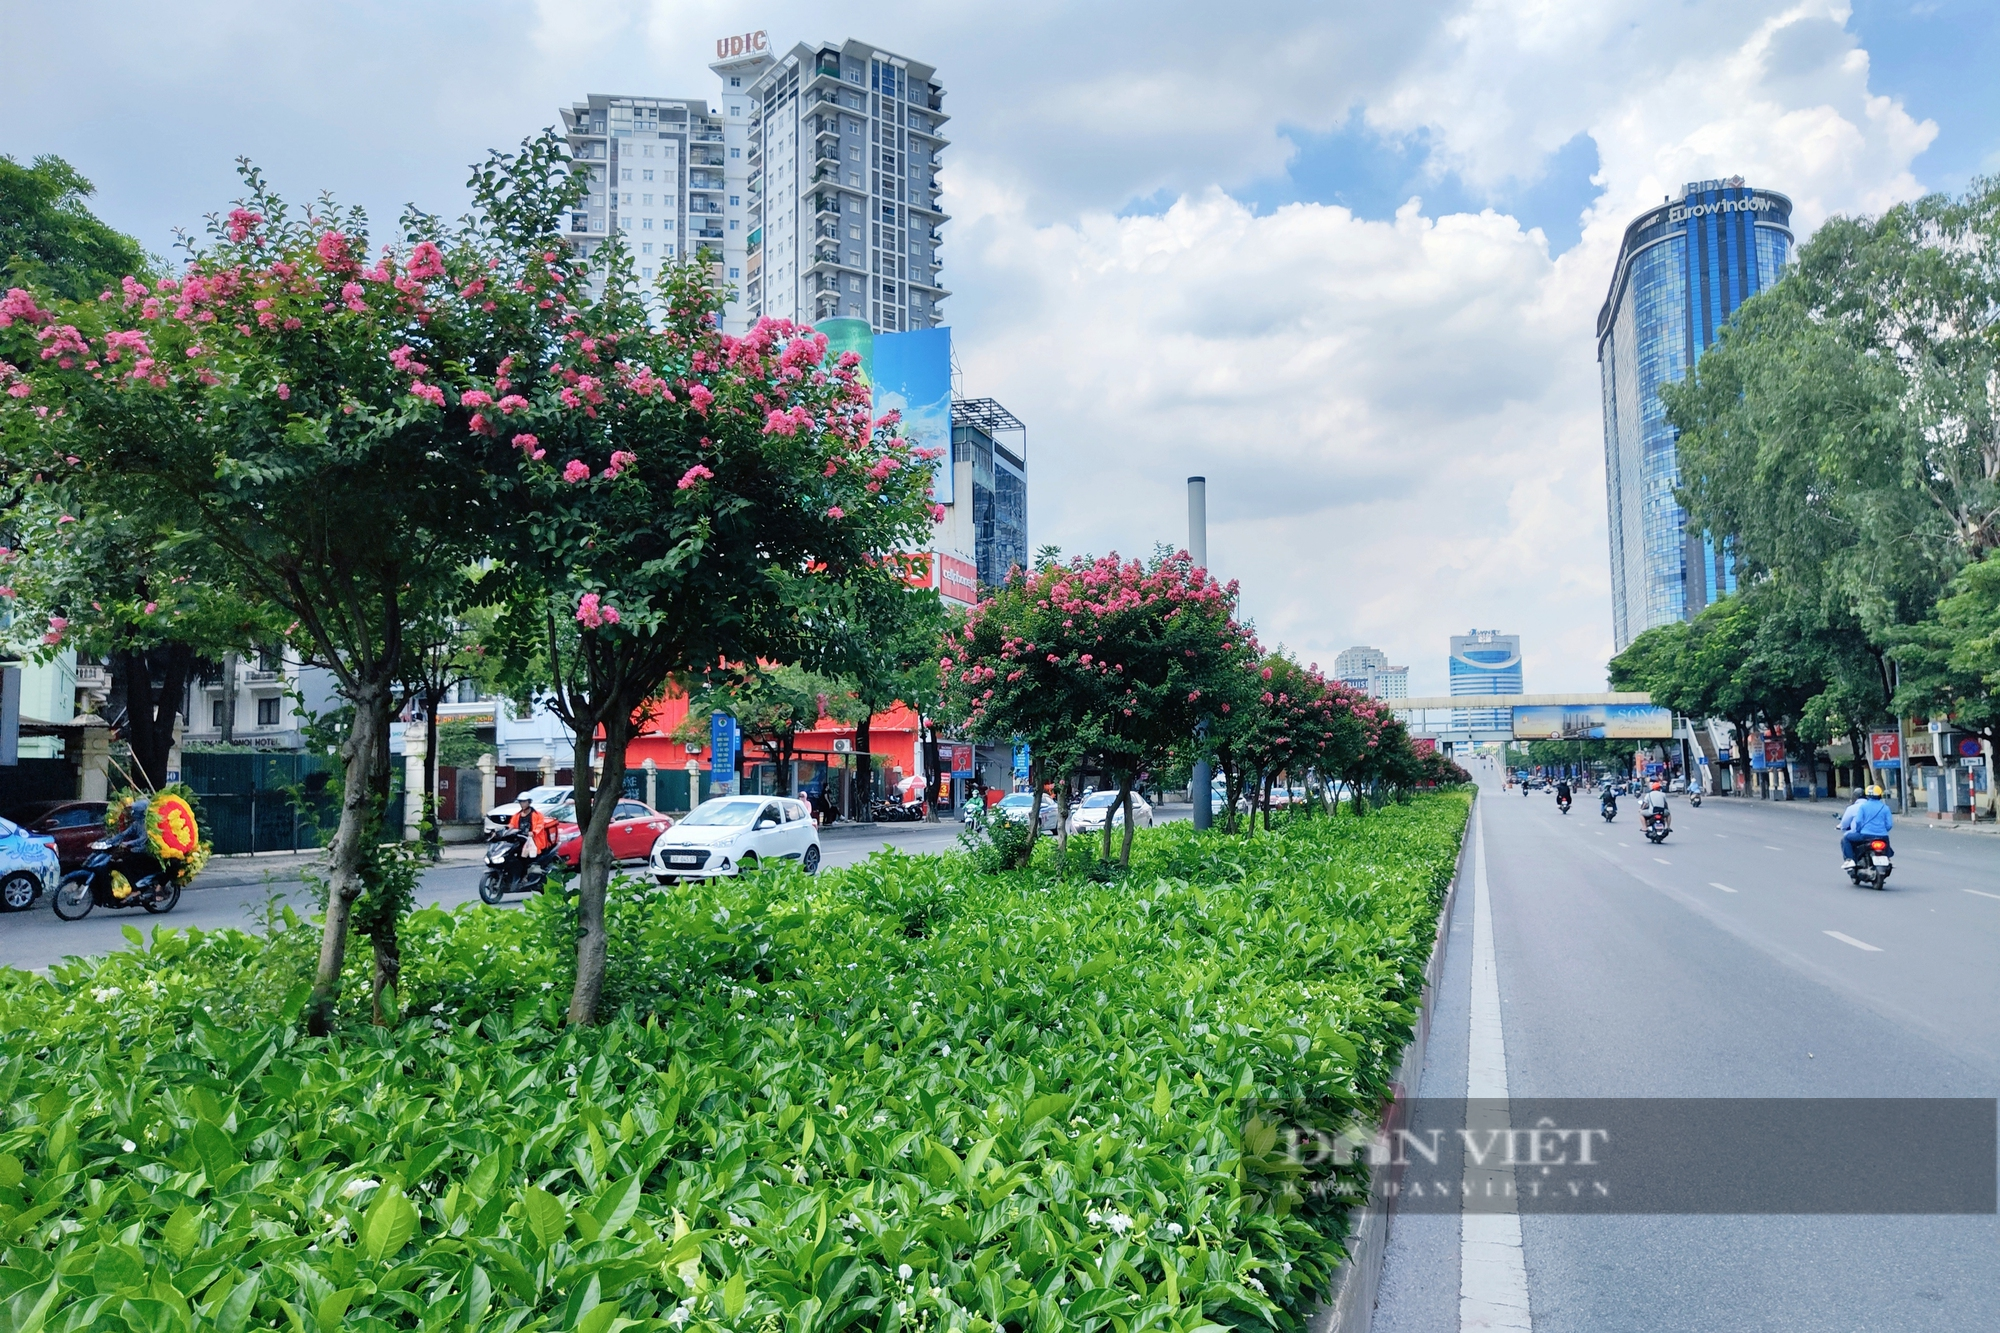 Hàng phong lá đỏ chết khô bị nhổ bỏ, hoa tương vi phủ sắc hồng trên đường Nguyễn Chí Thanh - Ảnh 13.